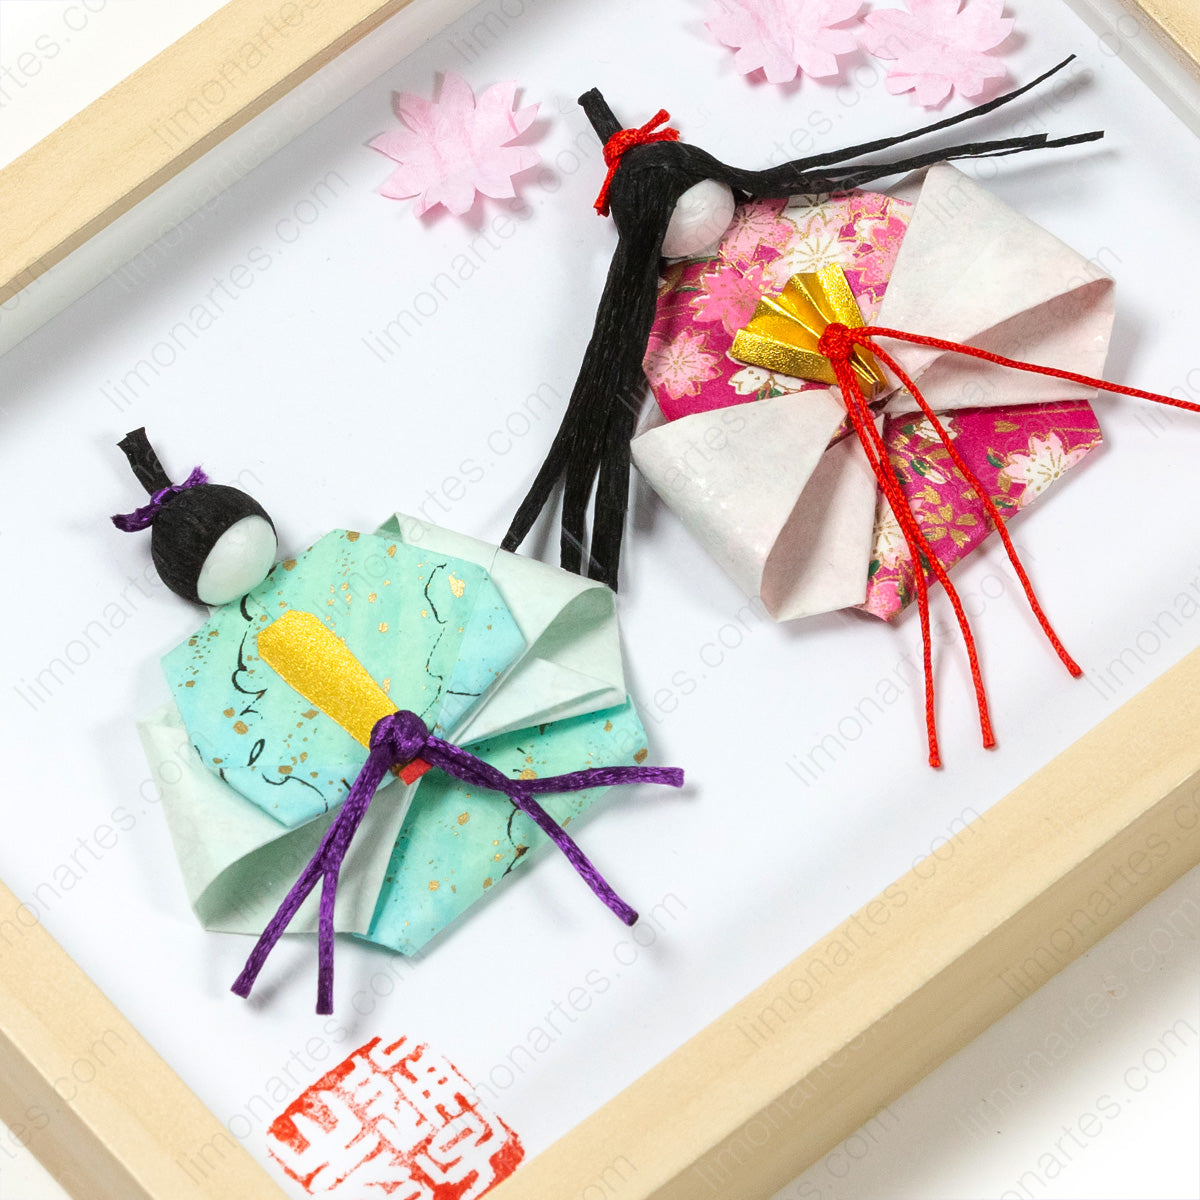 Obras de origami japonesas del artista MICHIKO/Obras originales hechas a mano